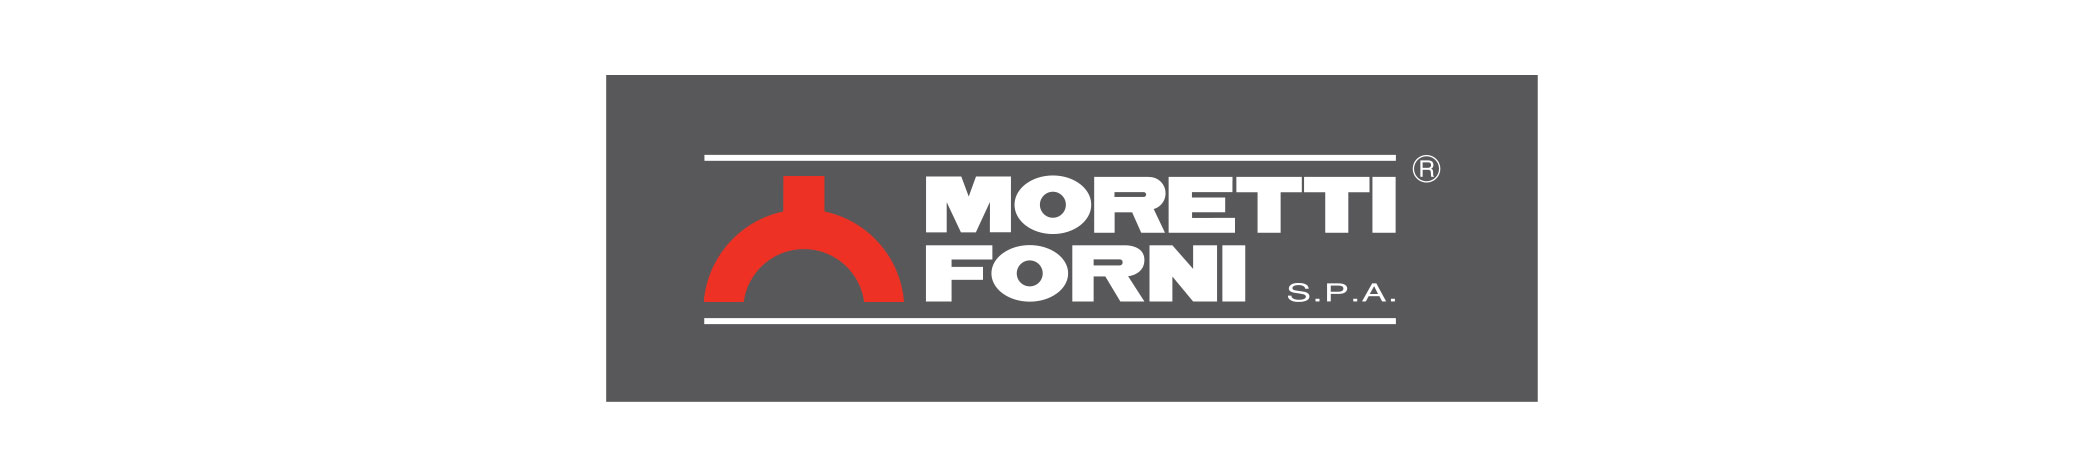 moretti-forni-brand.jpg